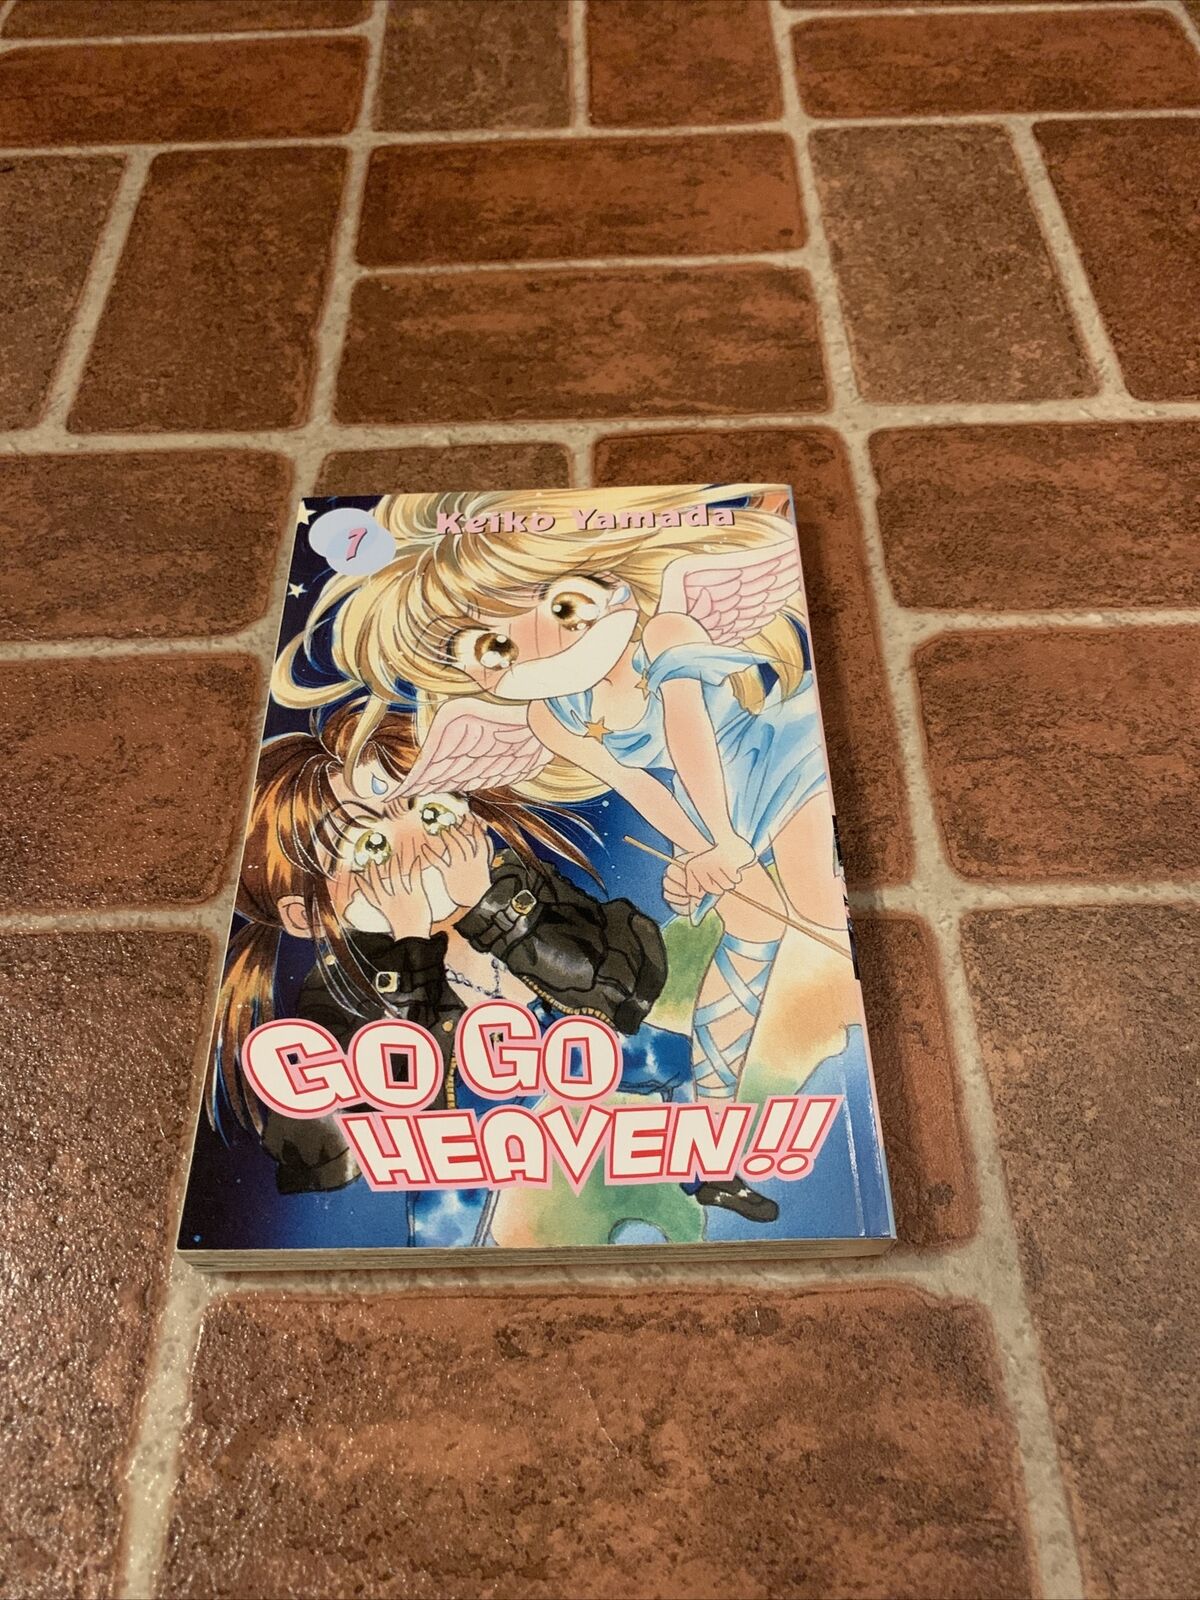 Go Go Heaven Volume 7 English Manga Keiko Yamada OOP 